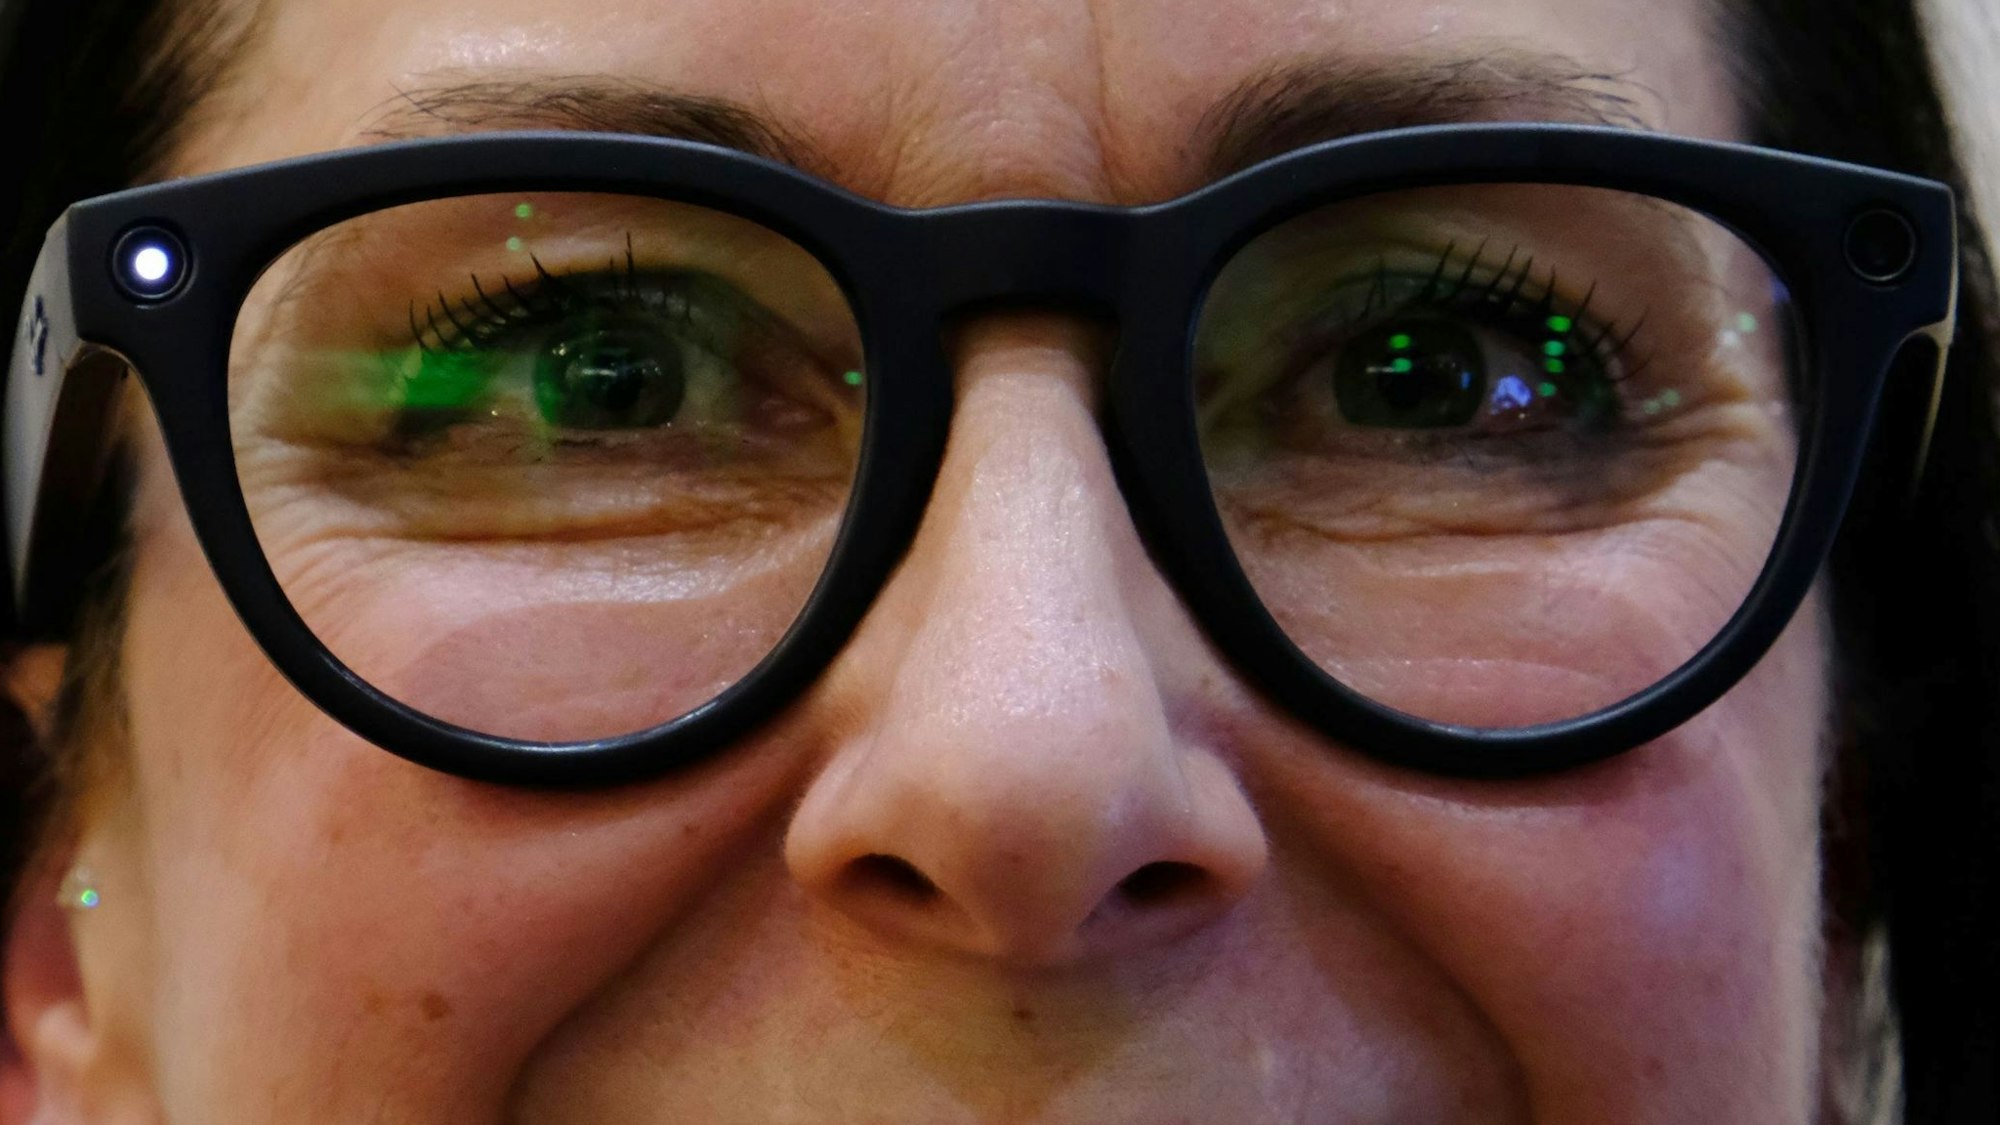 Wettbewerbsteilnehmerin Michaela Schmidt trägt eine Brille, in deren Gestell eine Kameralinse eingebaut ist.